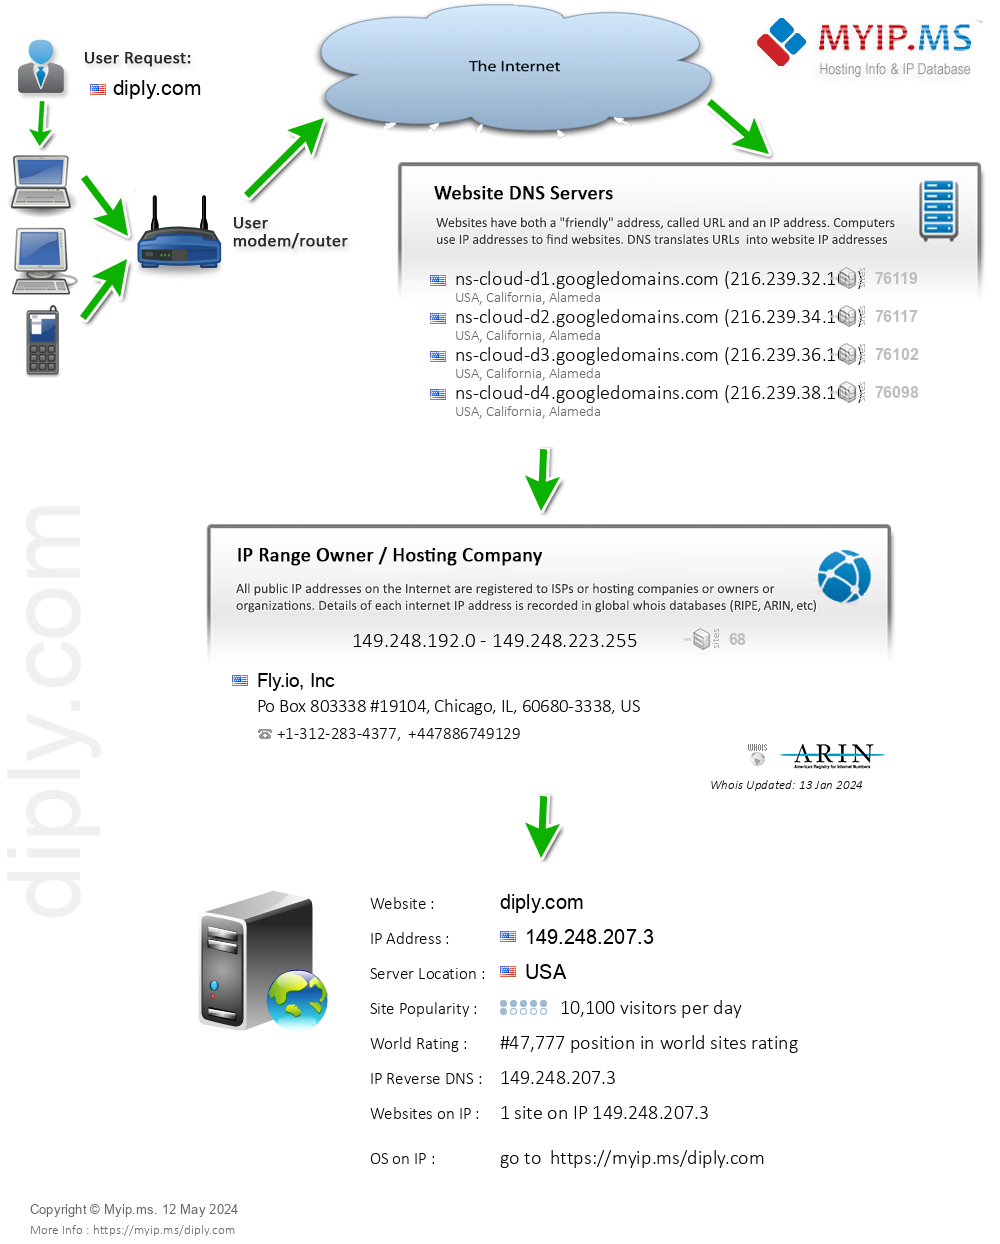 Diply.com - Website Hosting Visual IP Diagram